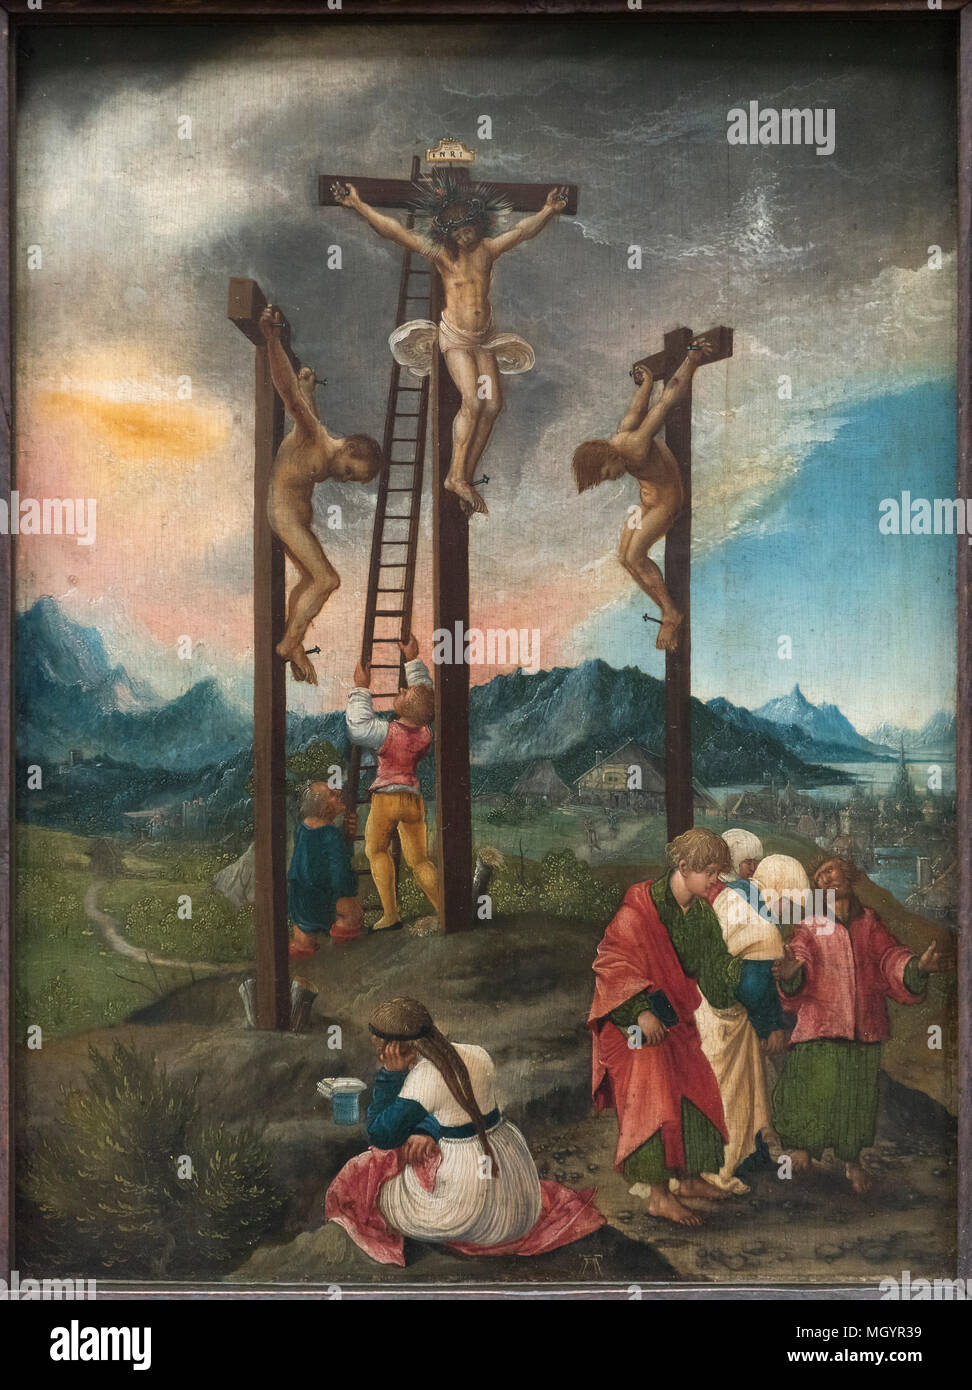 Albrecht Altdorfer (ca. 1480-1538), Crocifissione / Cristo sulla croce tra due ladroni, ca 1526. Christus am Kreuz zwischen den Schächern. Foto Stock